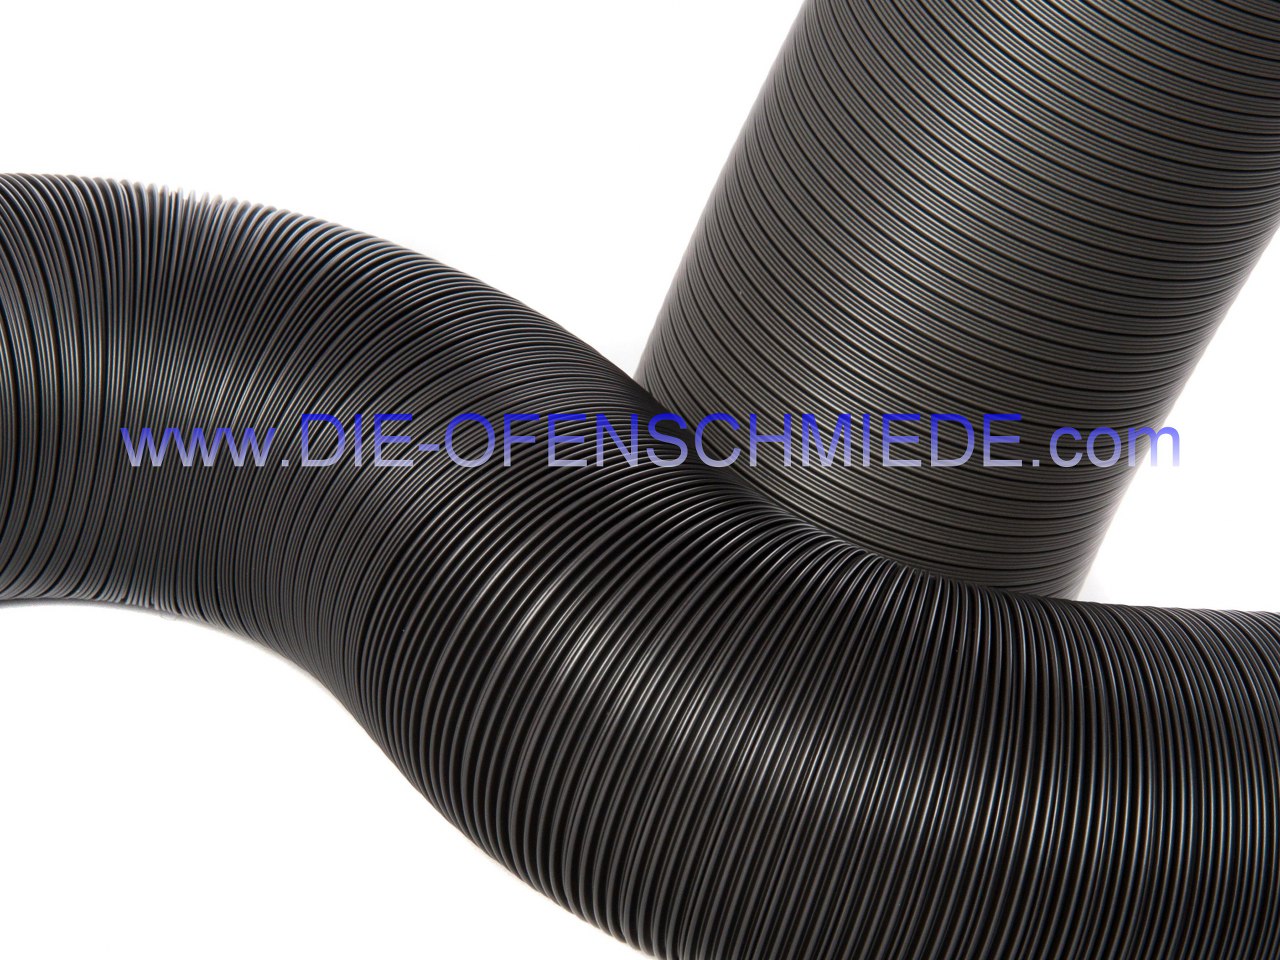 Aluflexrohr Therm Flex schwarz für Außenluftanschluss, isoliert, 0,75 m, Ø 100 mm